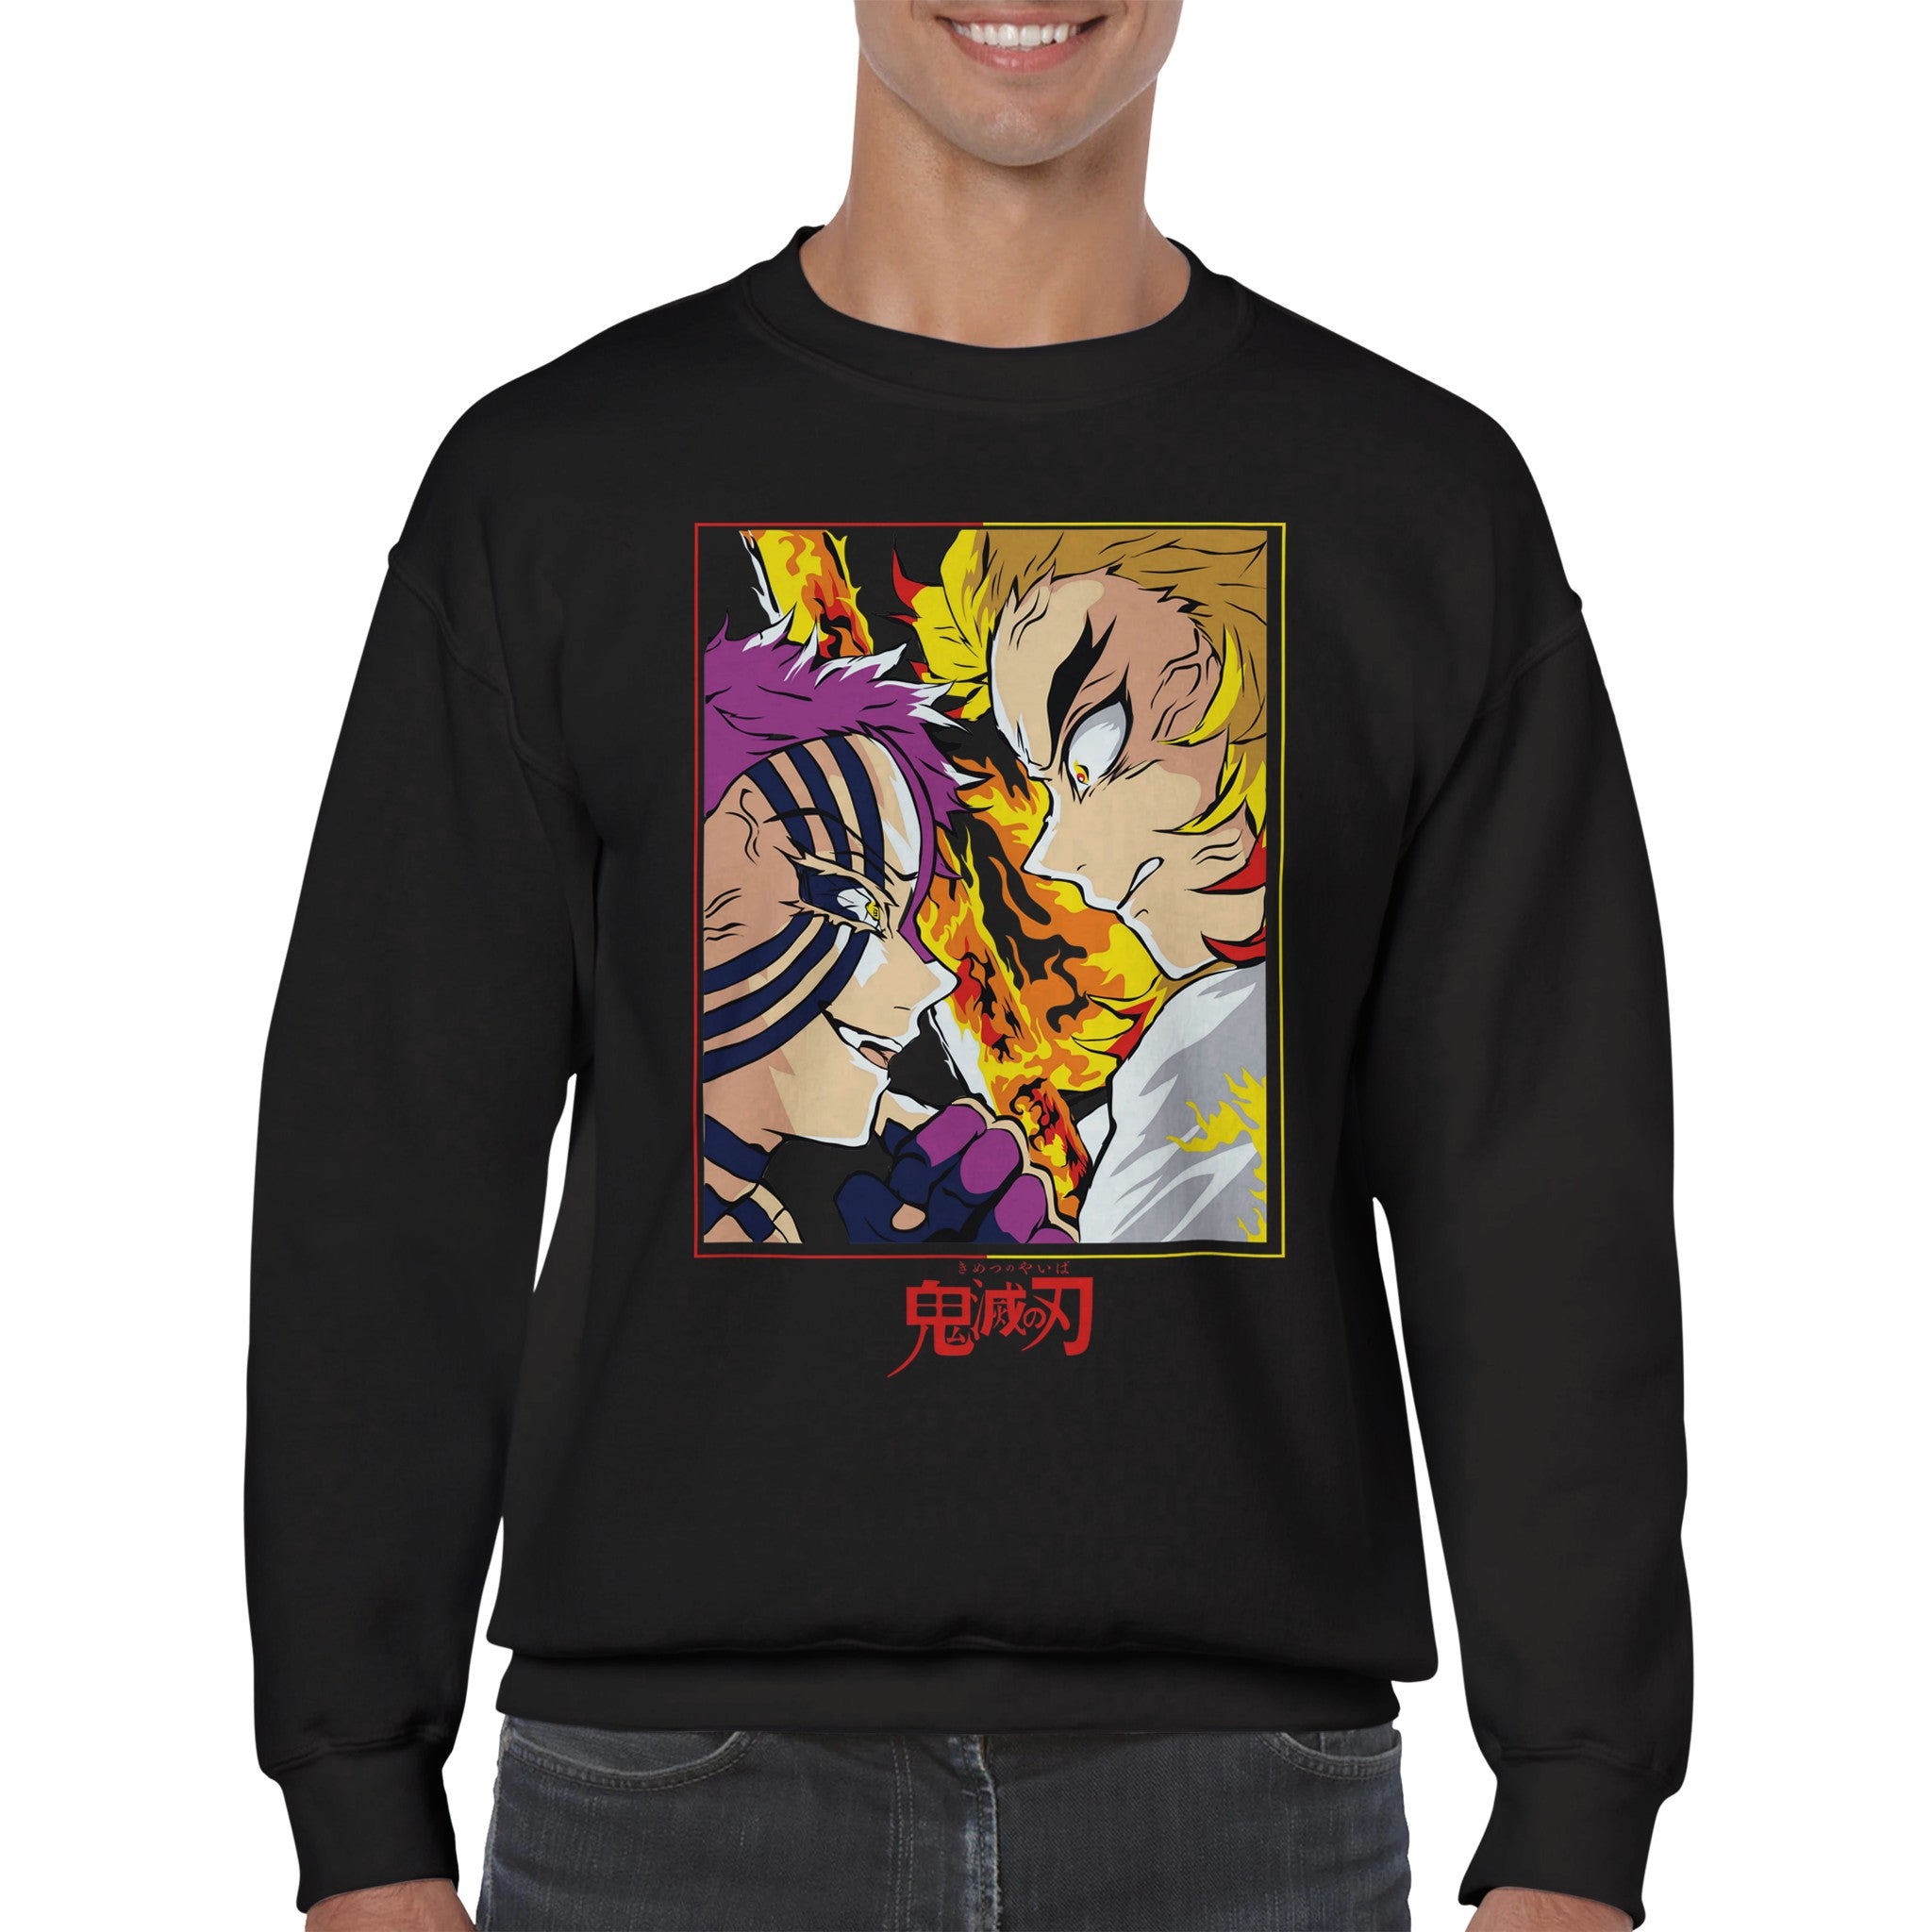 shop and buy demon slayer anime clothing rengoku vs akaza sweatshirt/longsleeve/jumper